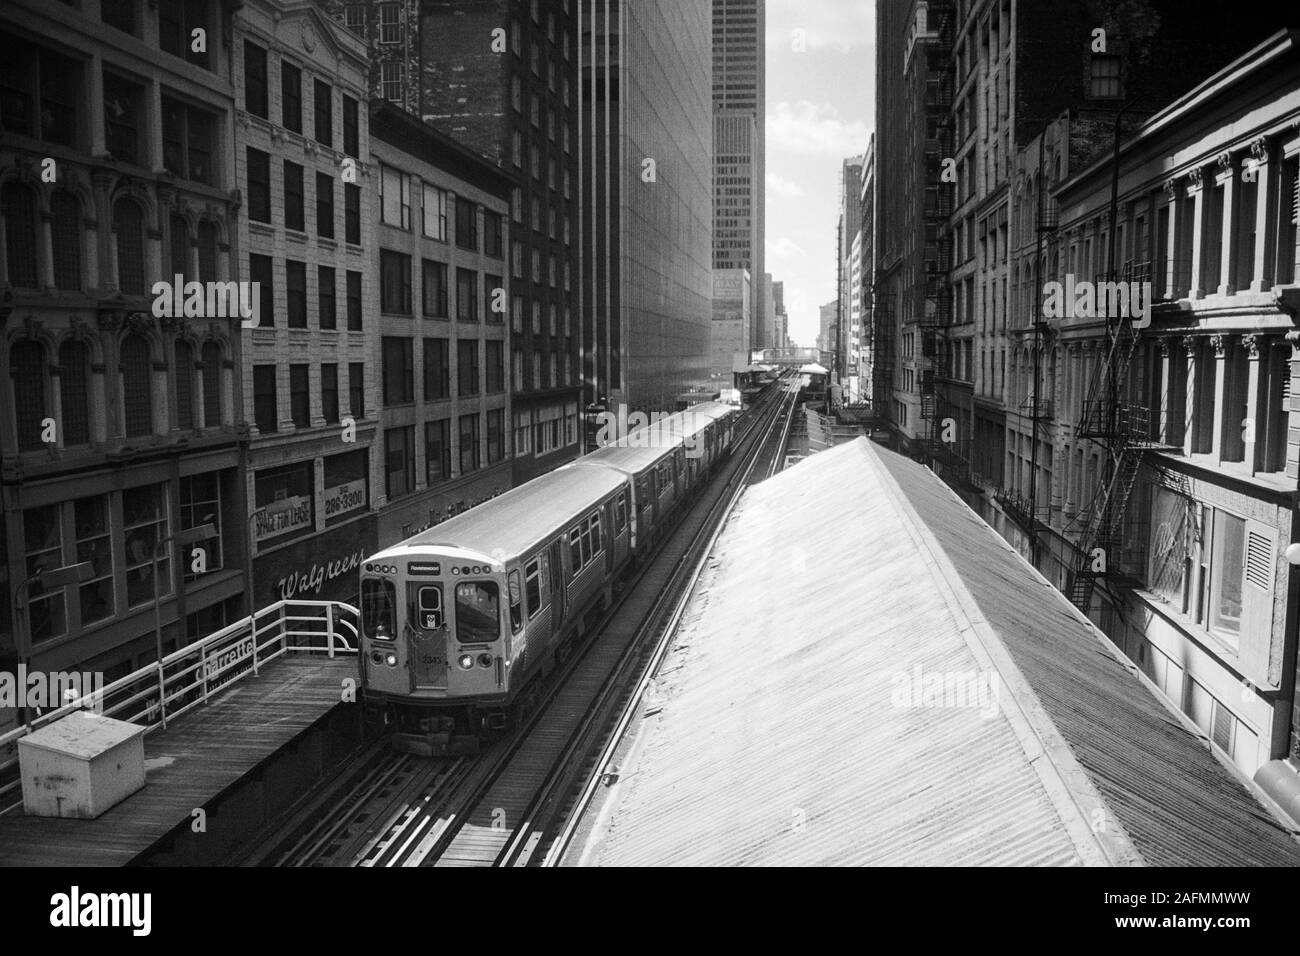 Chicago, Illinois, USA - 1996: Archivierung schwarz-weiß Blick auf die Innenstadt von Architektur und der S-Bahn und Hochbahn entlang Wabash Ave. Stockfoto